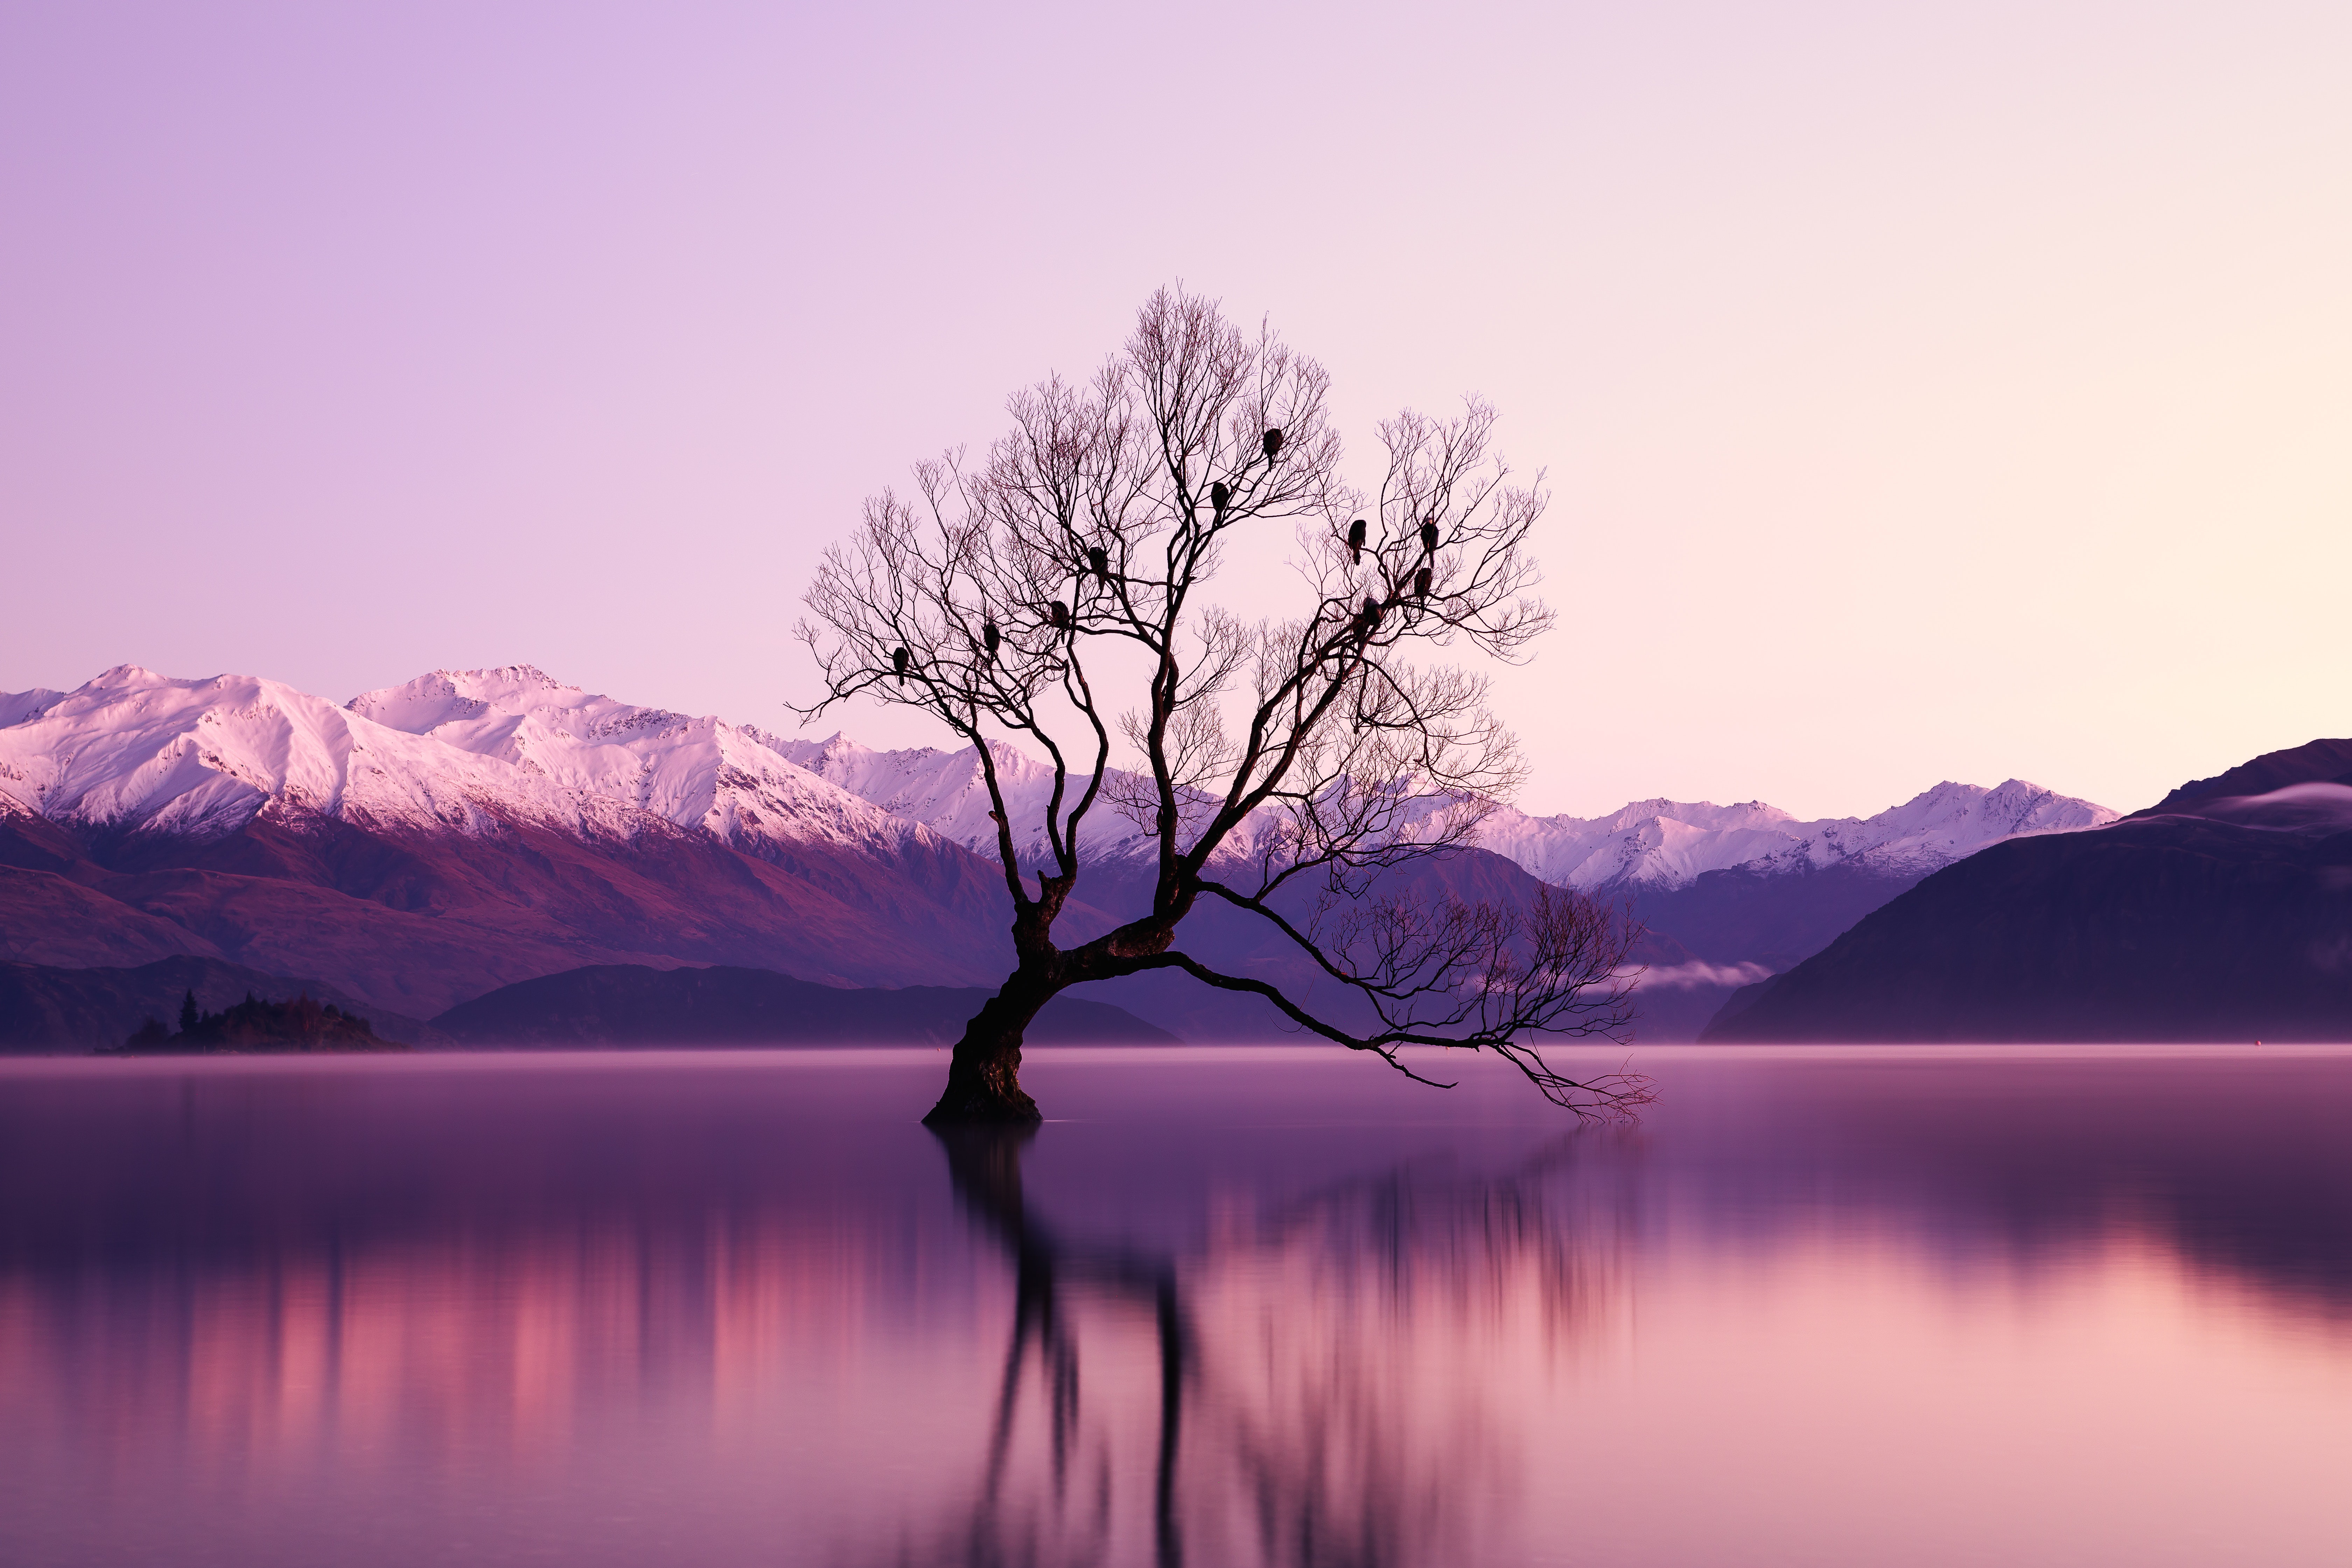 General 6720x4480 nature purple water trees reflection Lake Wanaka lake New Zealand mountains landscape snowy peak